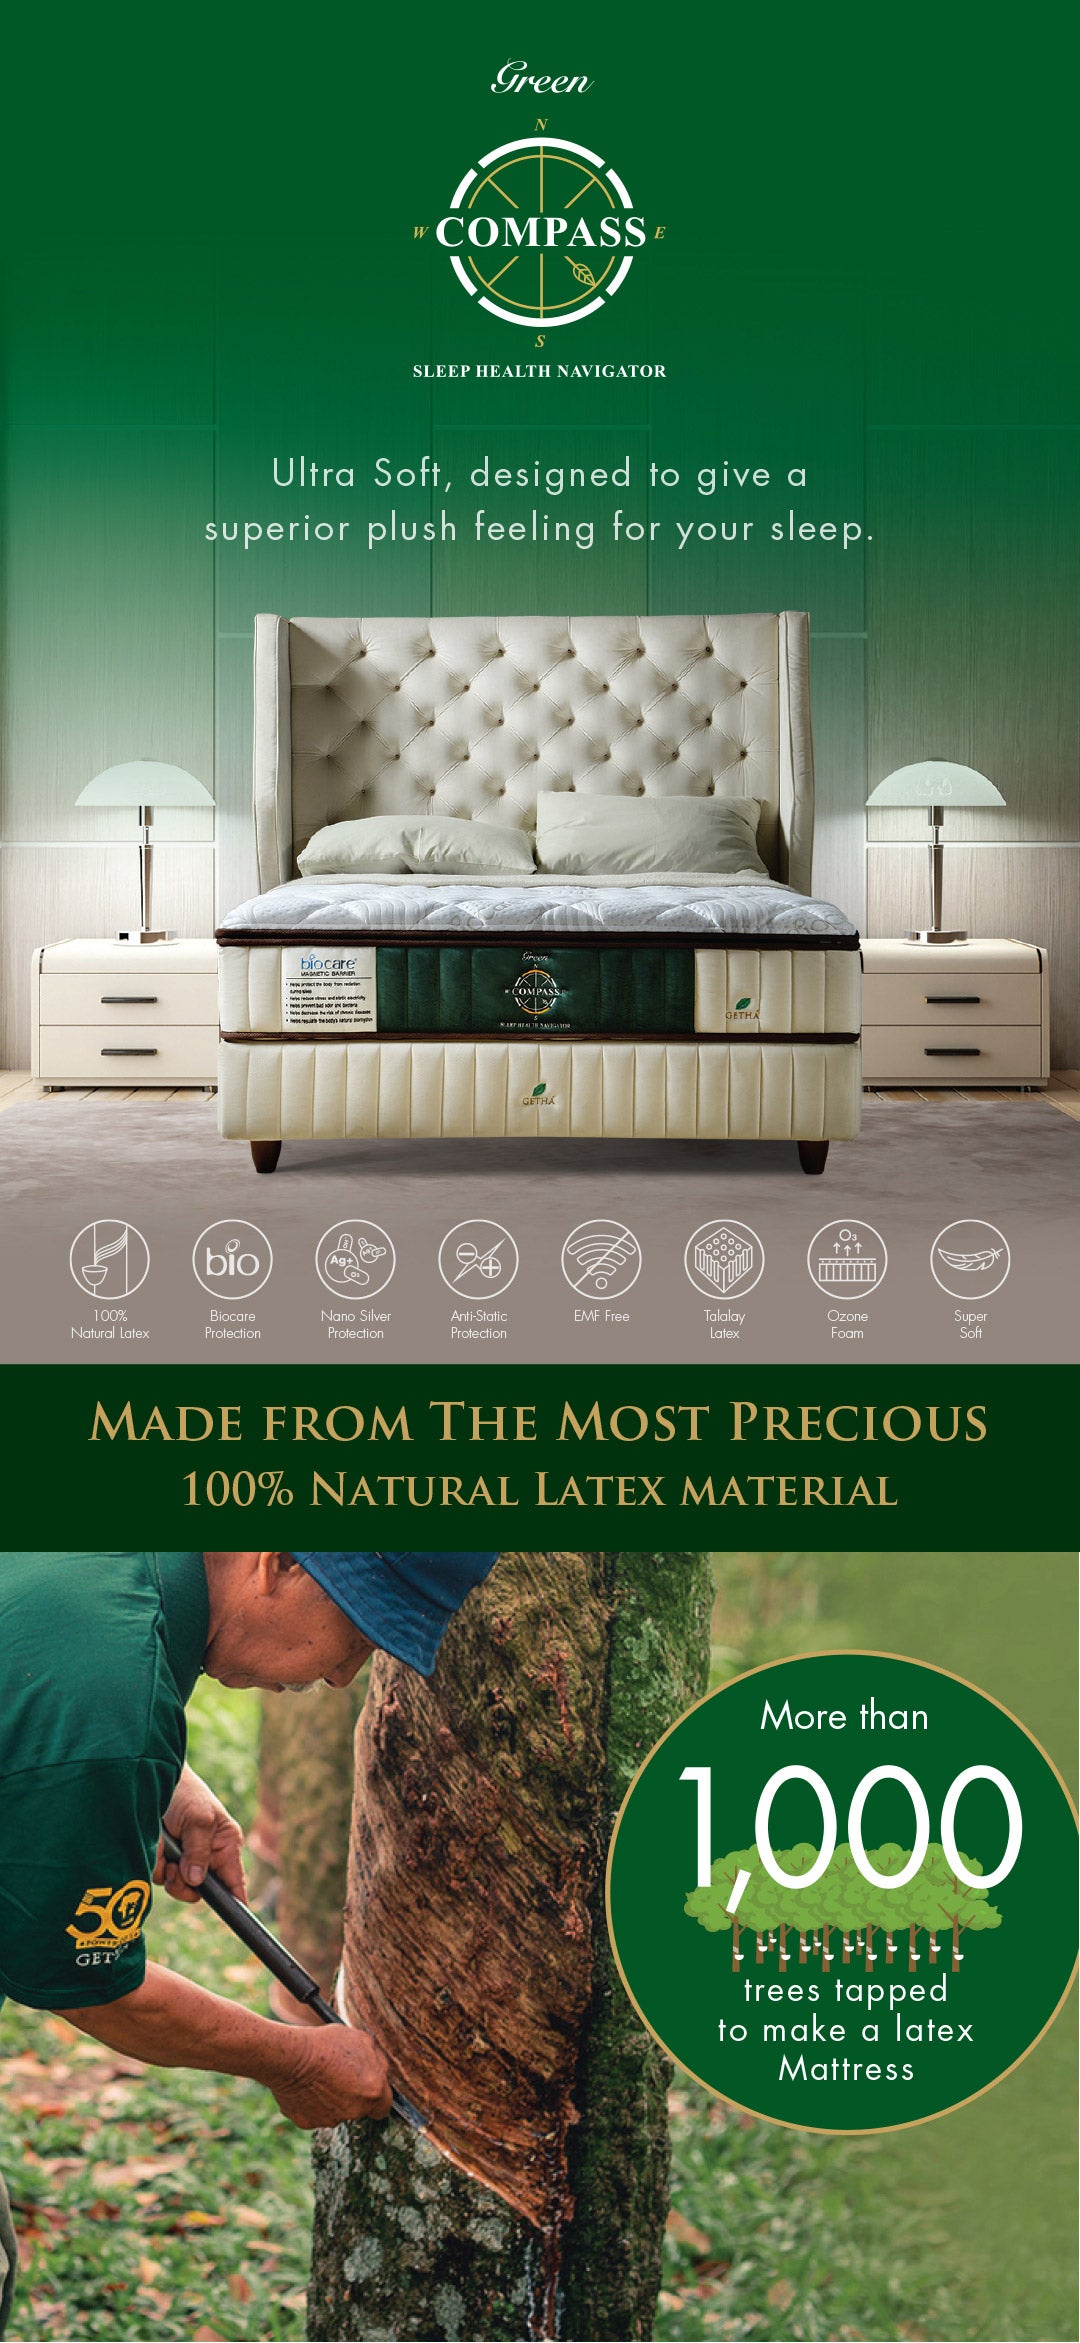 compass-green-mattress-product-description